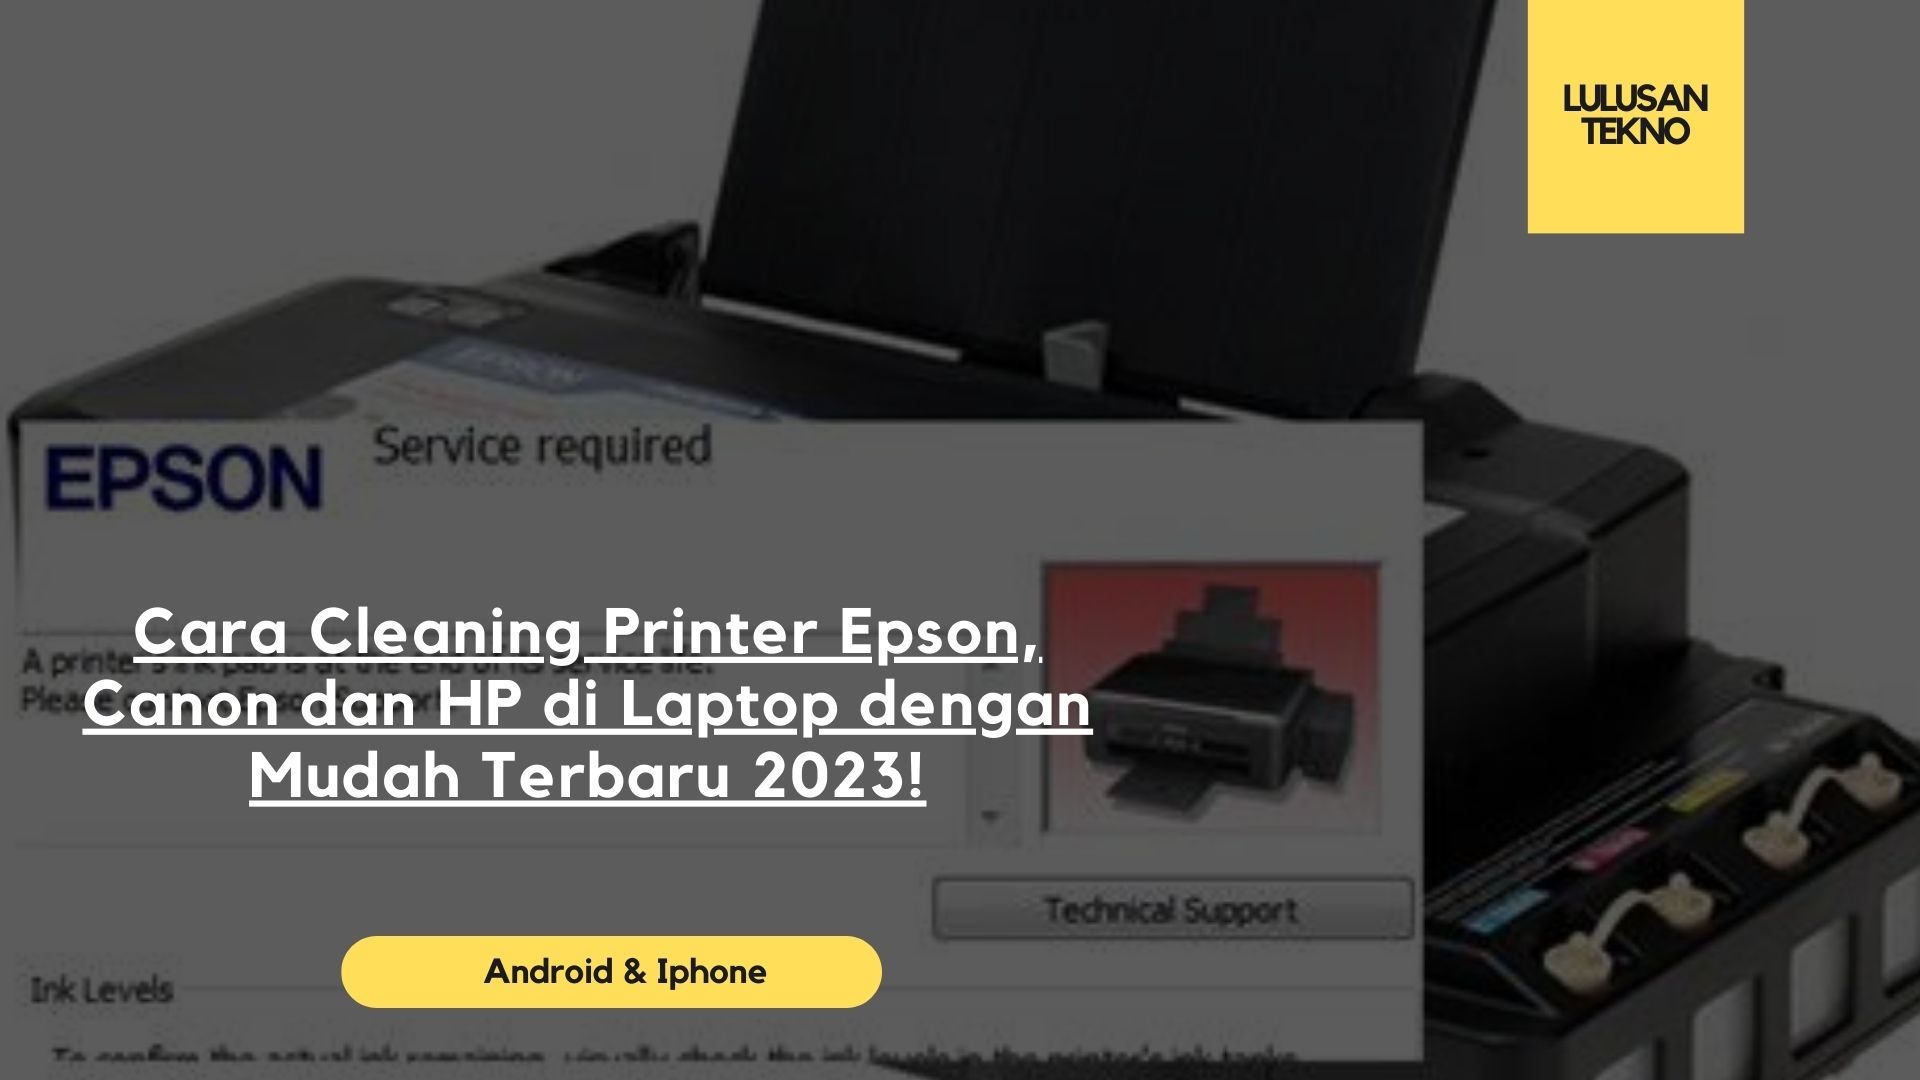 Cara Cleaning Printer Epson, Canon dan HP di Laptop dengan Mudah Terbaru 2023!